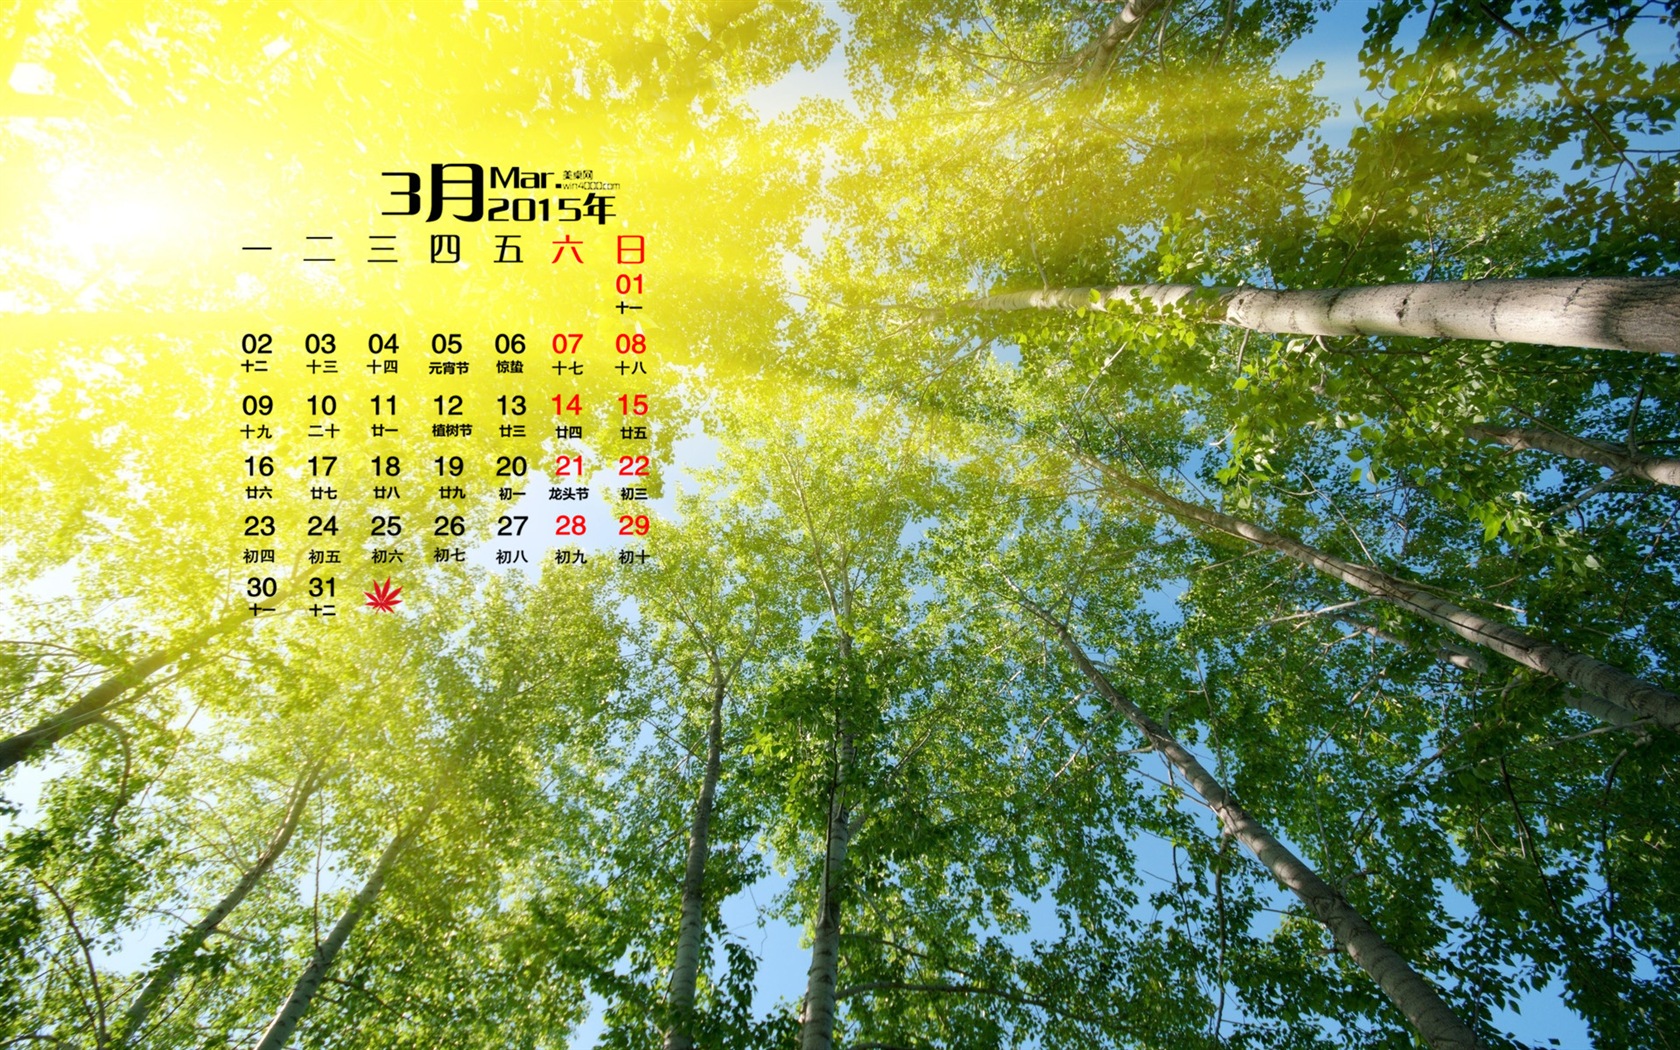 March 2015 Calendar wallpaper (1) #20 - 1680x1050